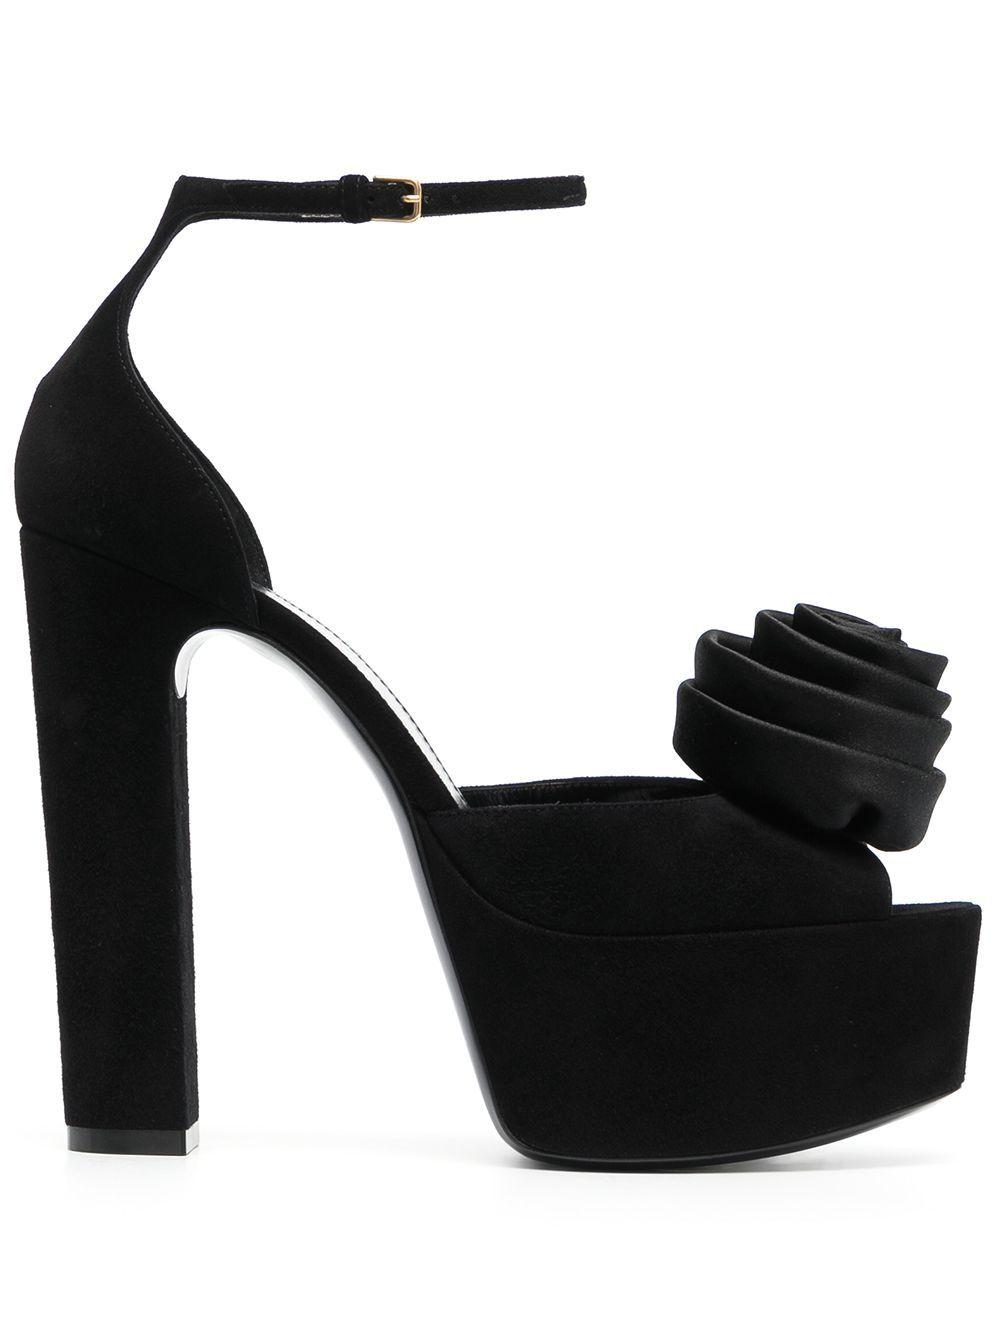 Saint Laurent Jodie Flower-detail Platform Sandals in Black | Lyst